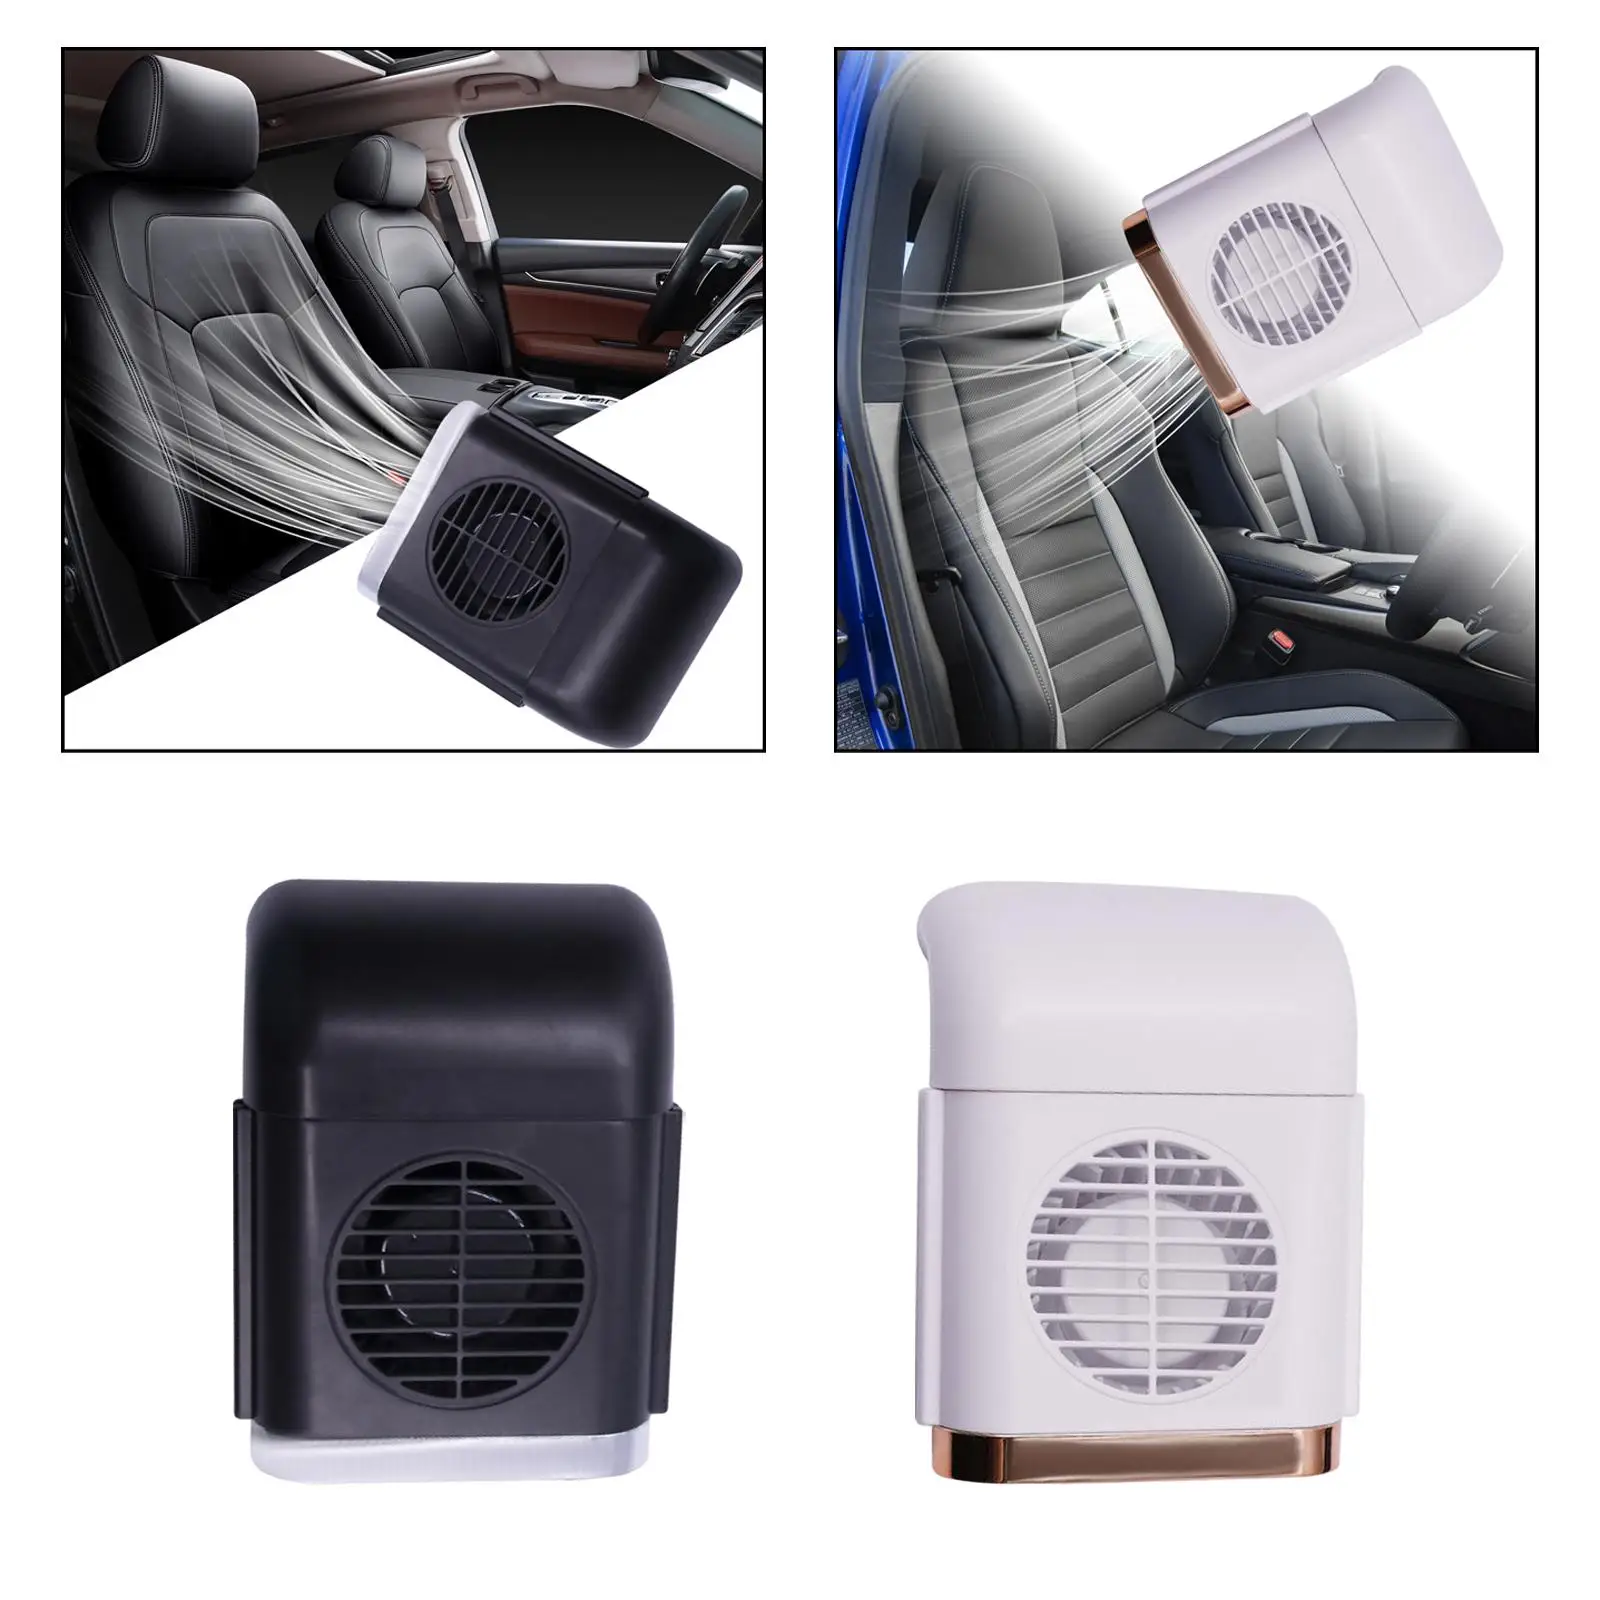 Car Seat Cooling Fan 3 Speeds Adjustable Car Headrest Fan for SUV Sedan